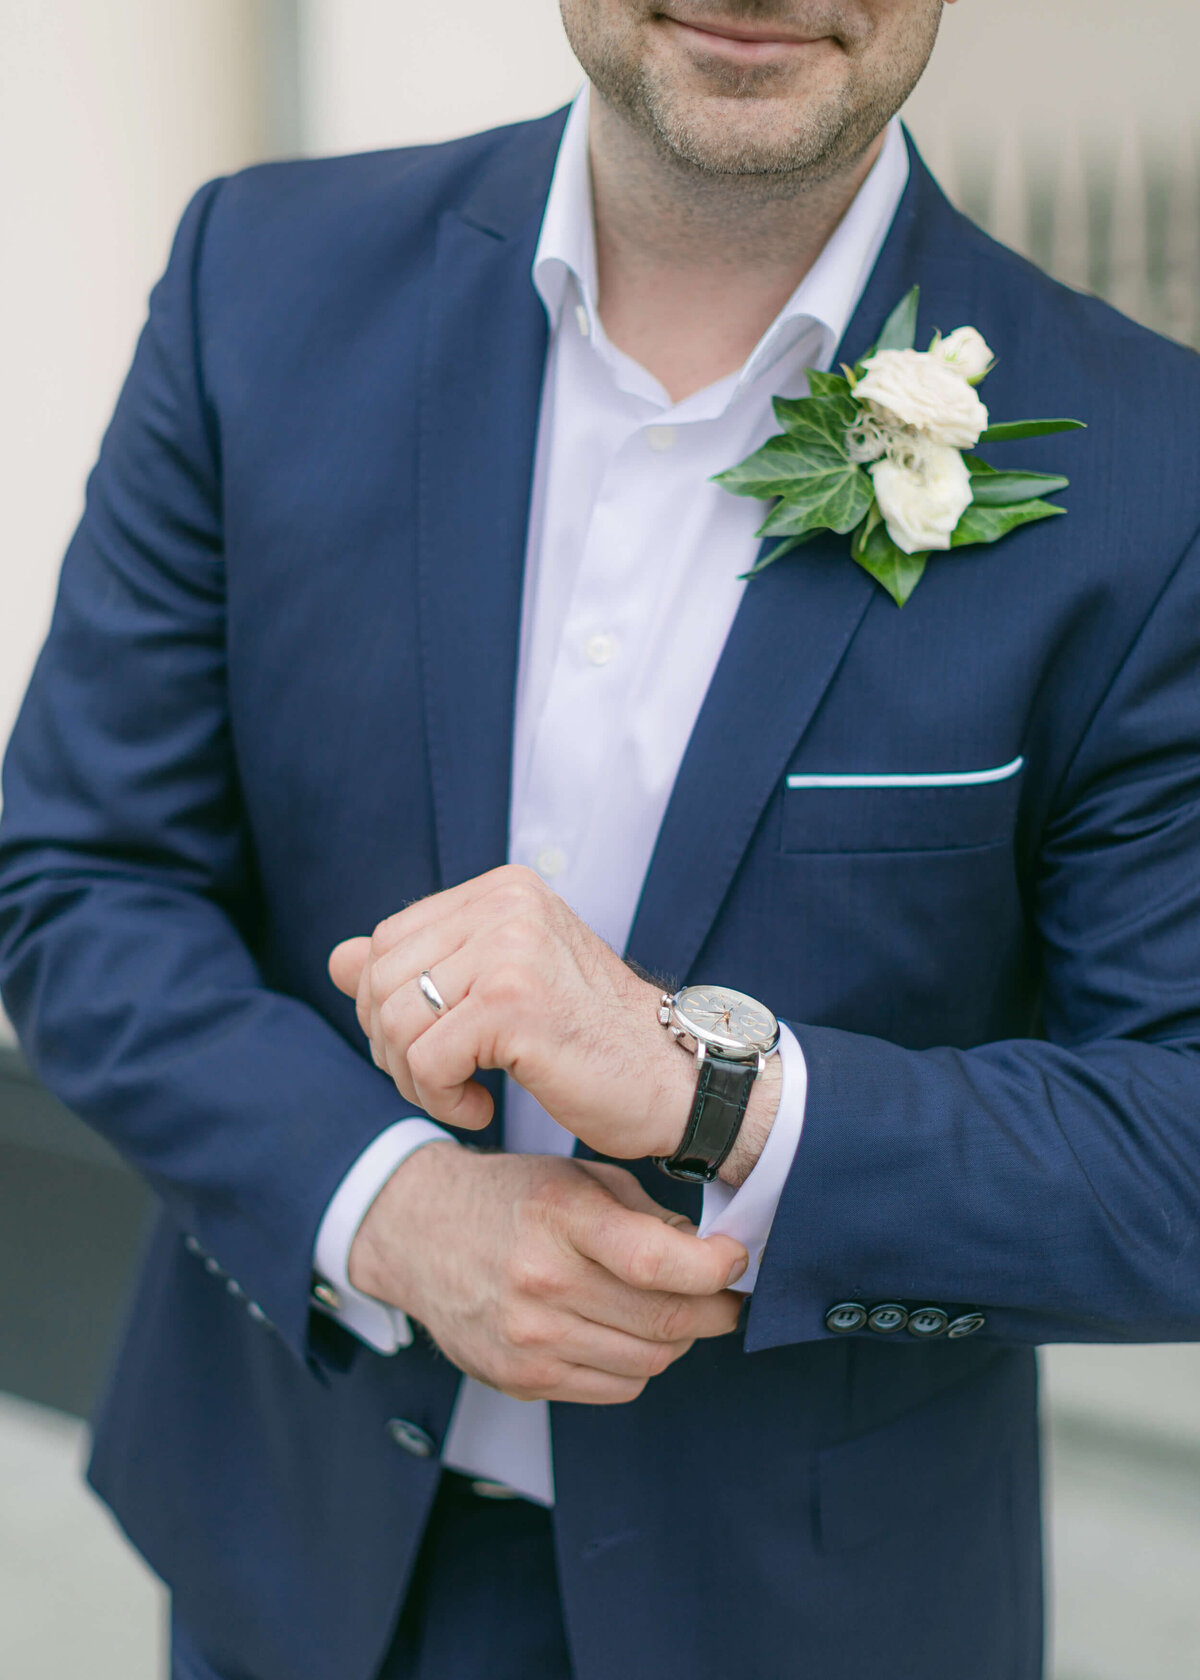 chloe-winstanley-wedding-london-elopment-groom-cufflinks-watch